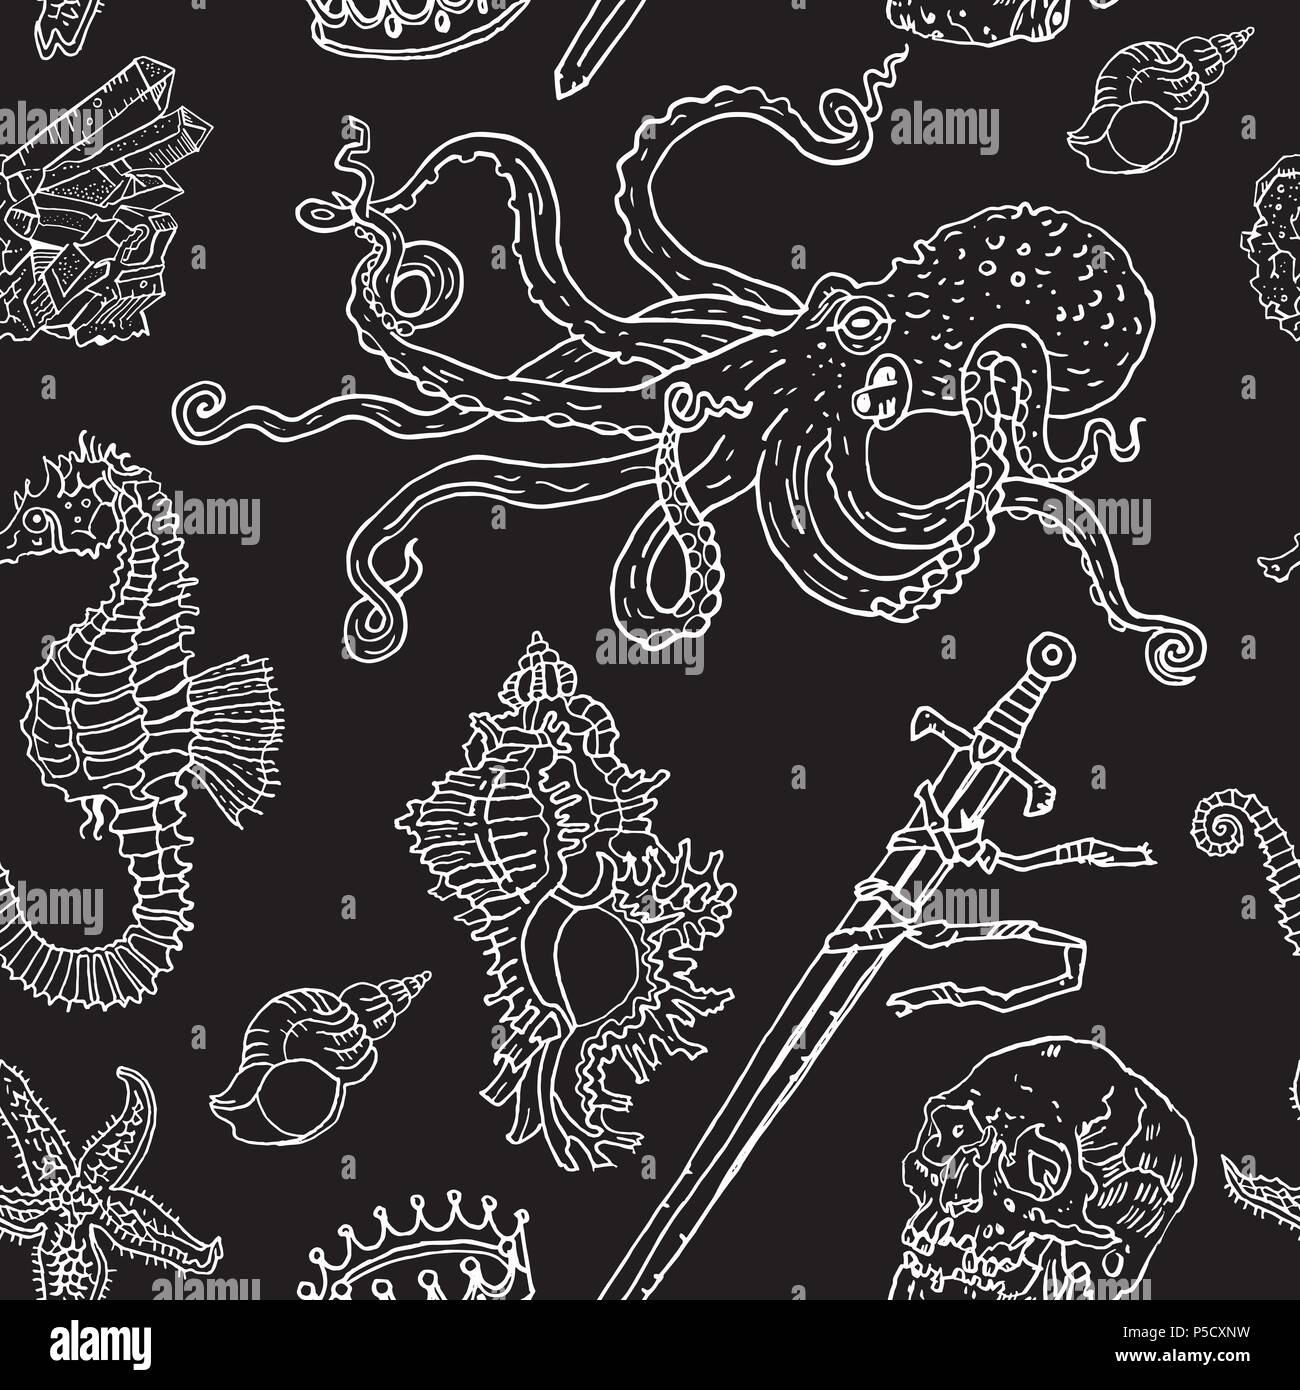 Motif : noir transparent nautique octopus, shell, étoiles, noyé, l'épée, la couronne, crâne de cristal, sea horse. Hand drawn vintage tattoo style gravure illustration. Sous l'eau, fantaisie, boho, gothique. Illustration de Vecteur